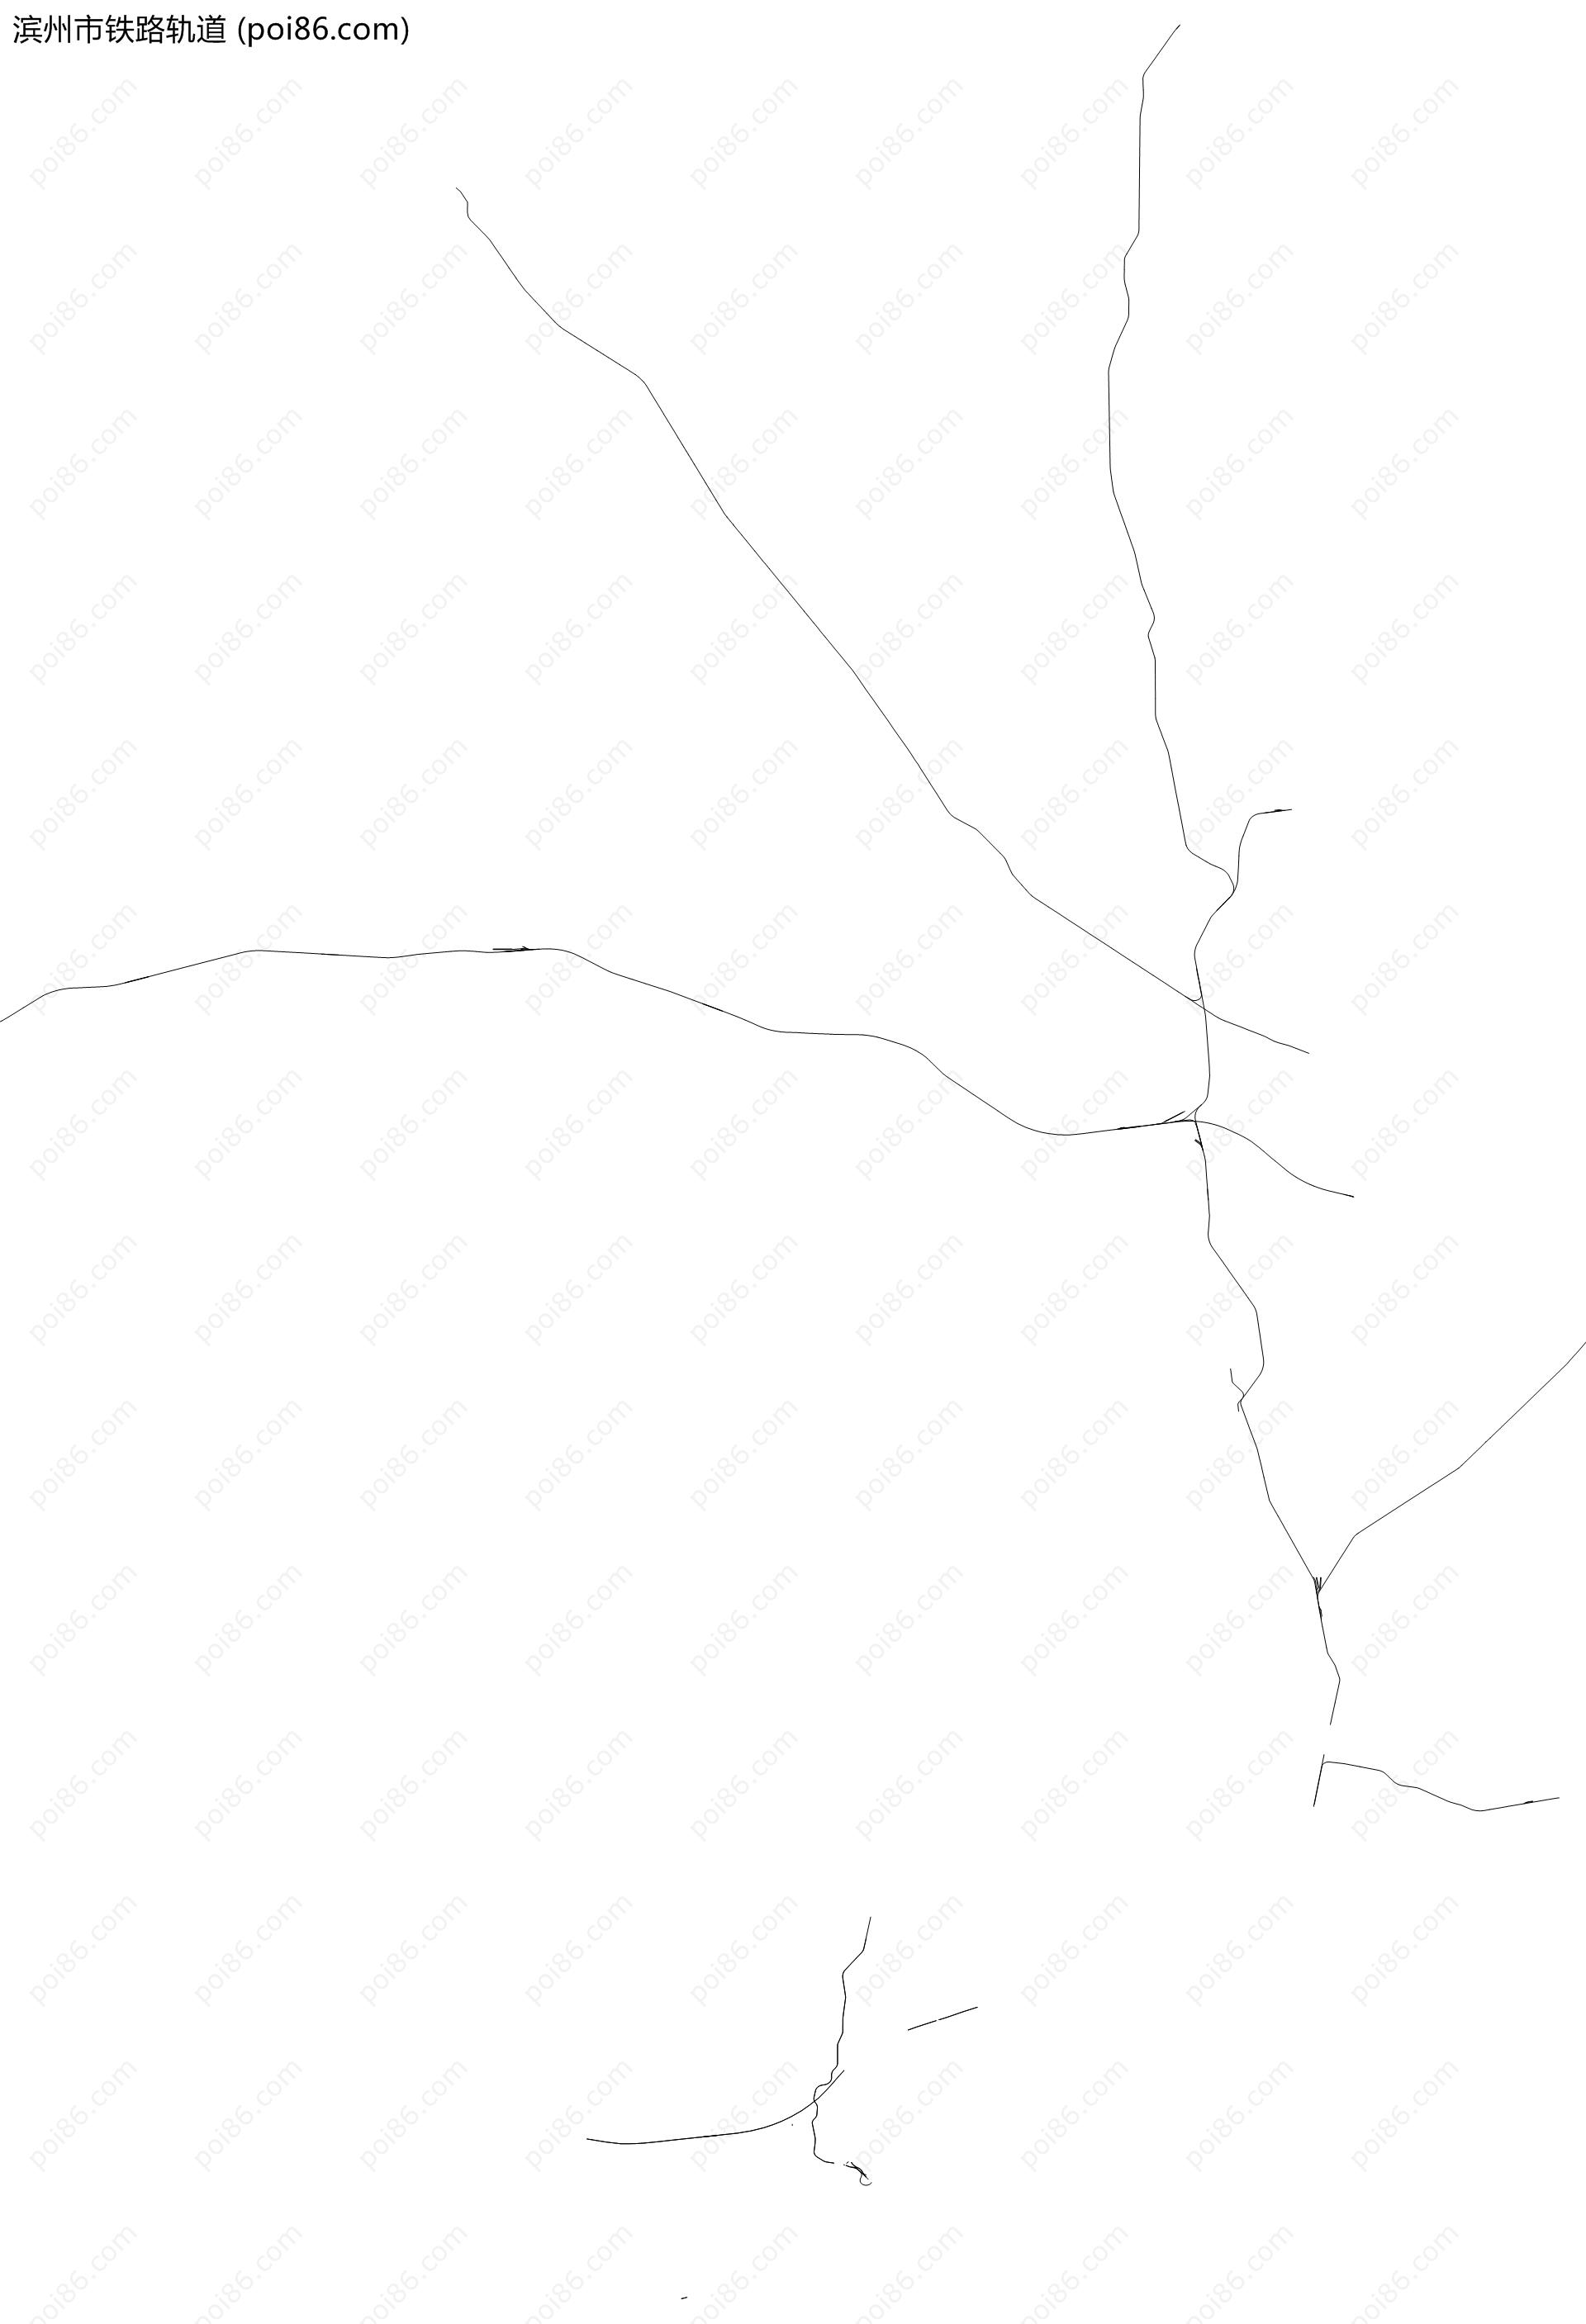 滨州市铁路轨道地图